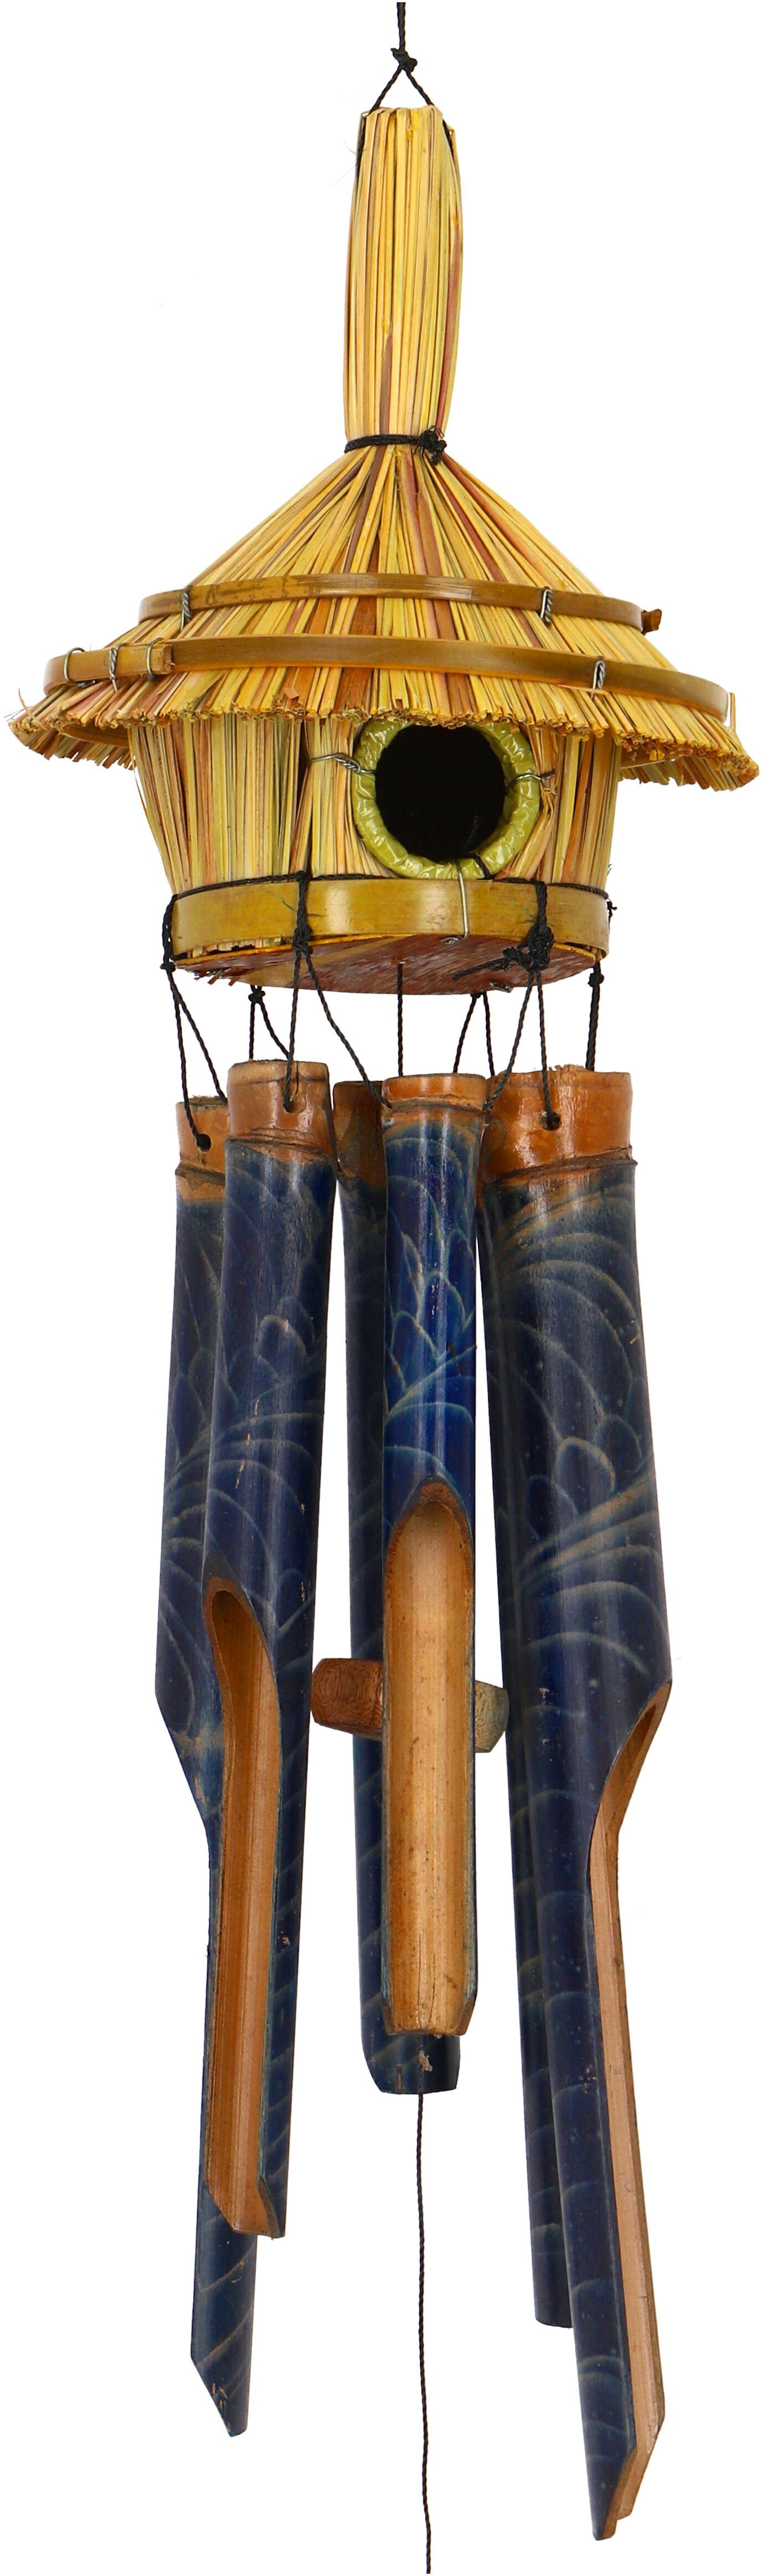 Windspiel aus Guru-Shop Klangspiel-Windspiel -.. Exotisches Bambus